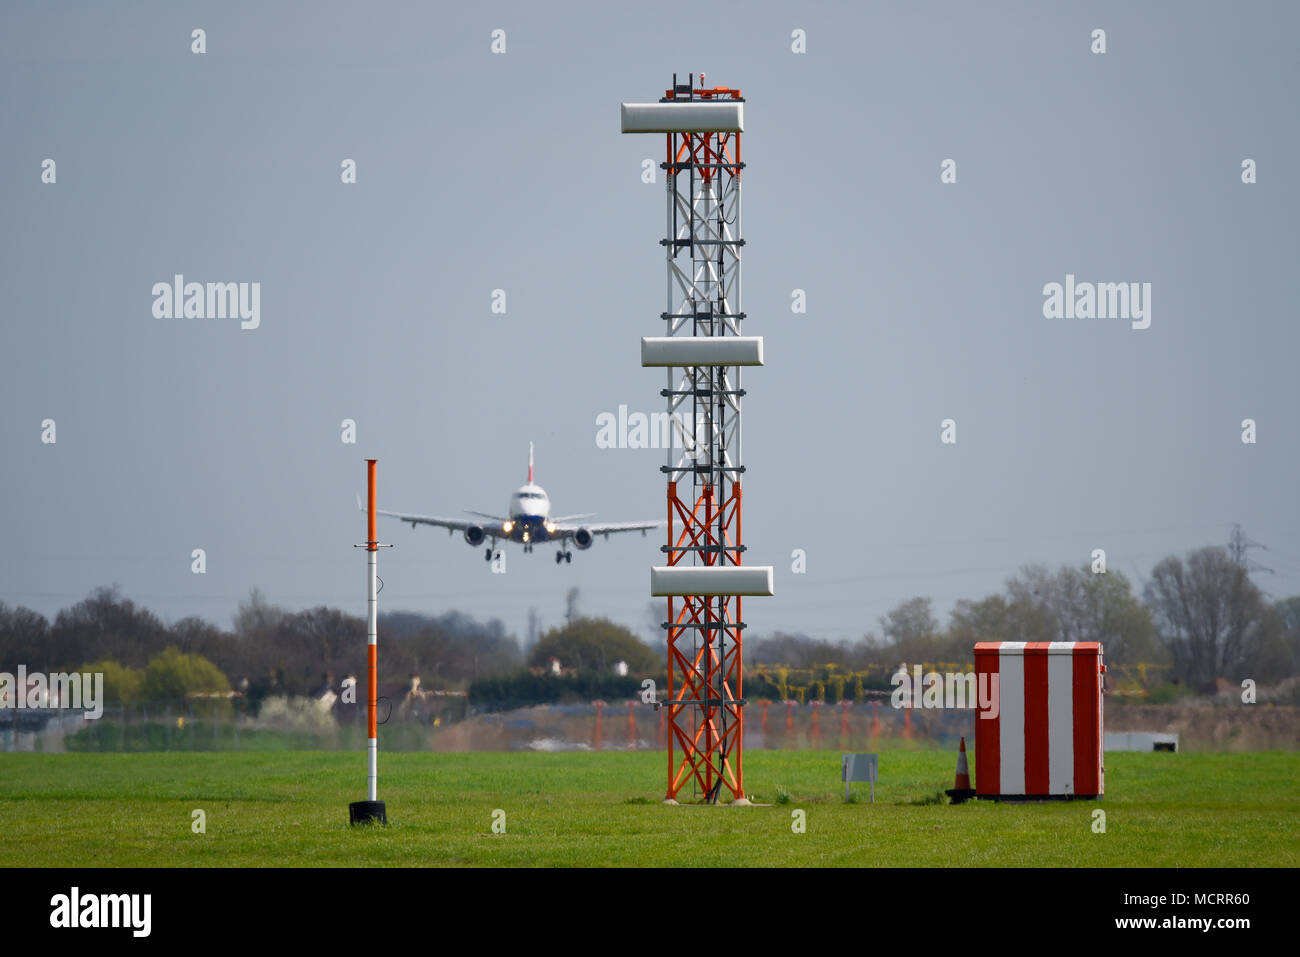 ILS Gleitwinkel Turm landing System in London Luton Flughafen. Infrastruktur. Mit British Airways Embraer Jet plane Seite rutschen zu Land Stockfoto